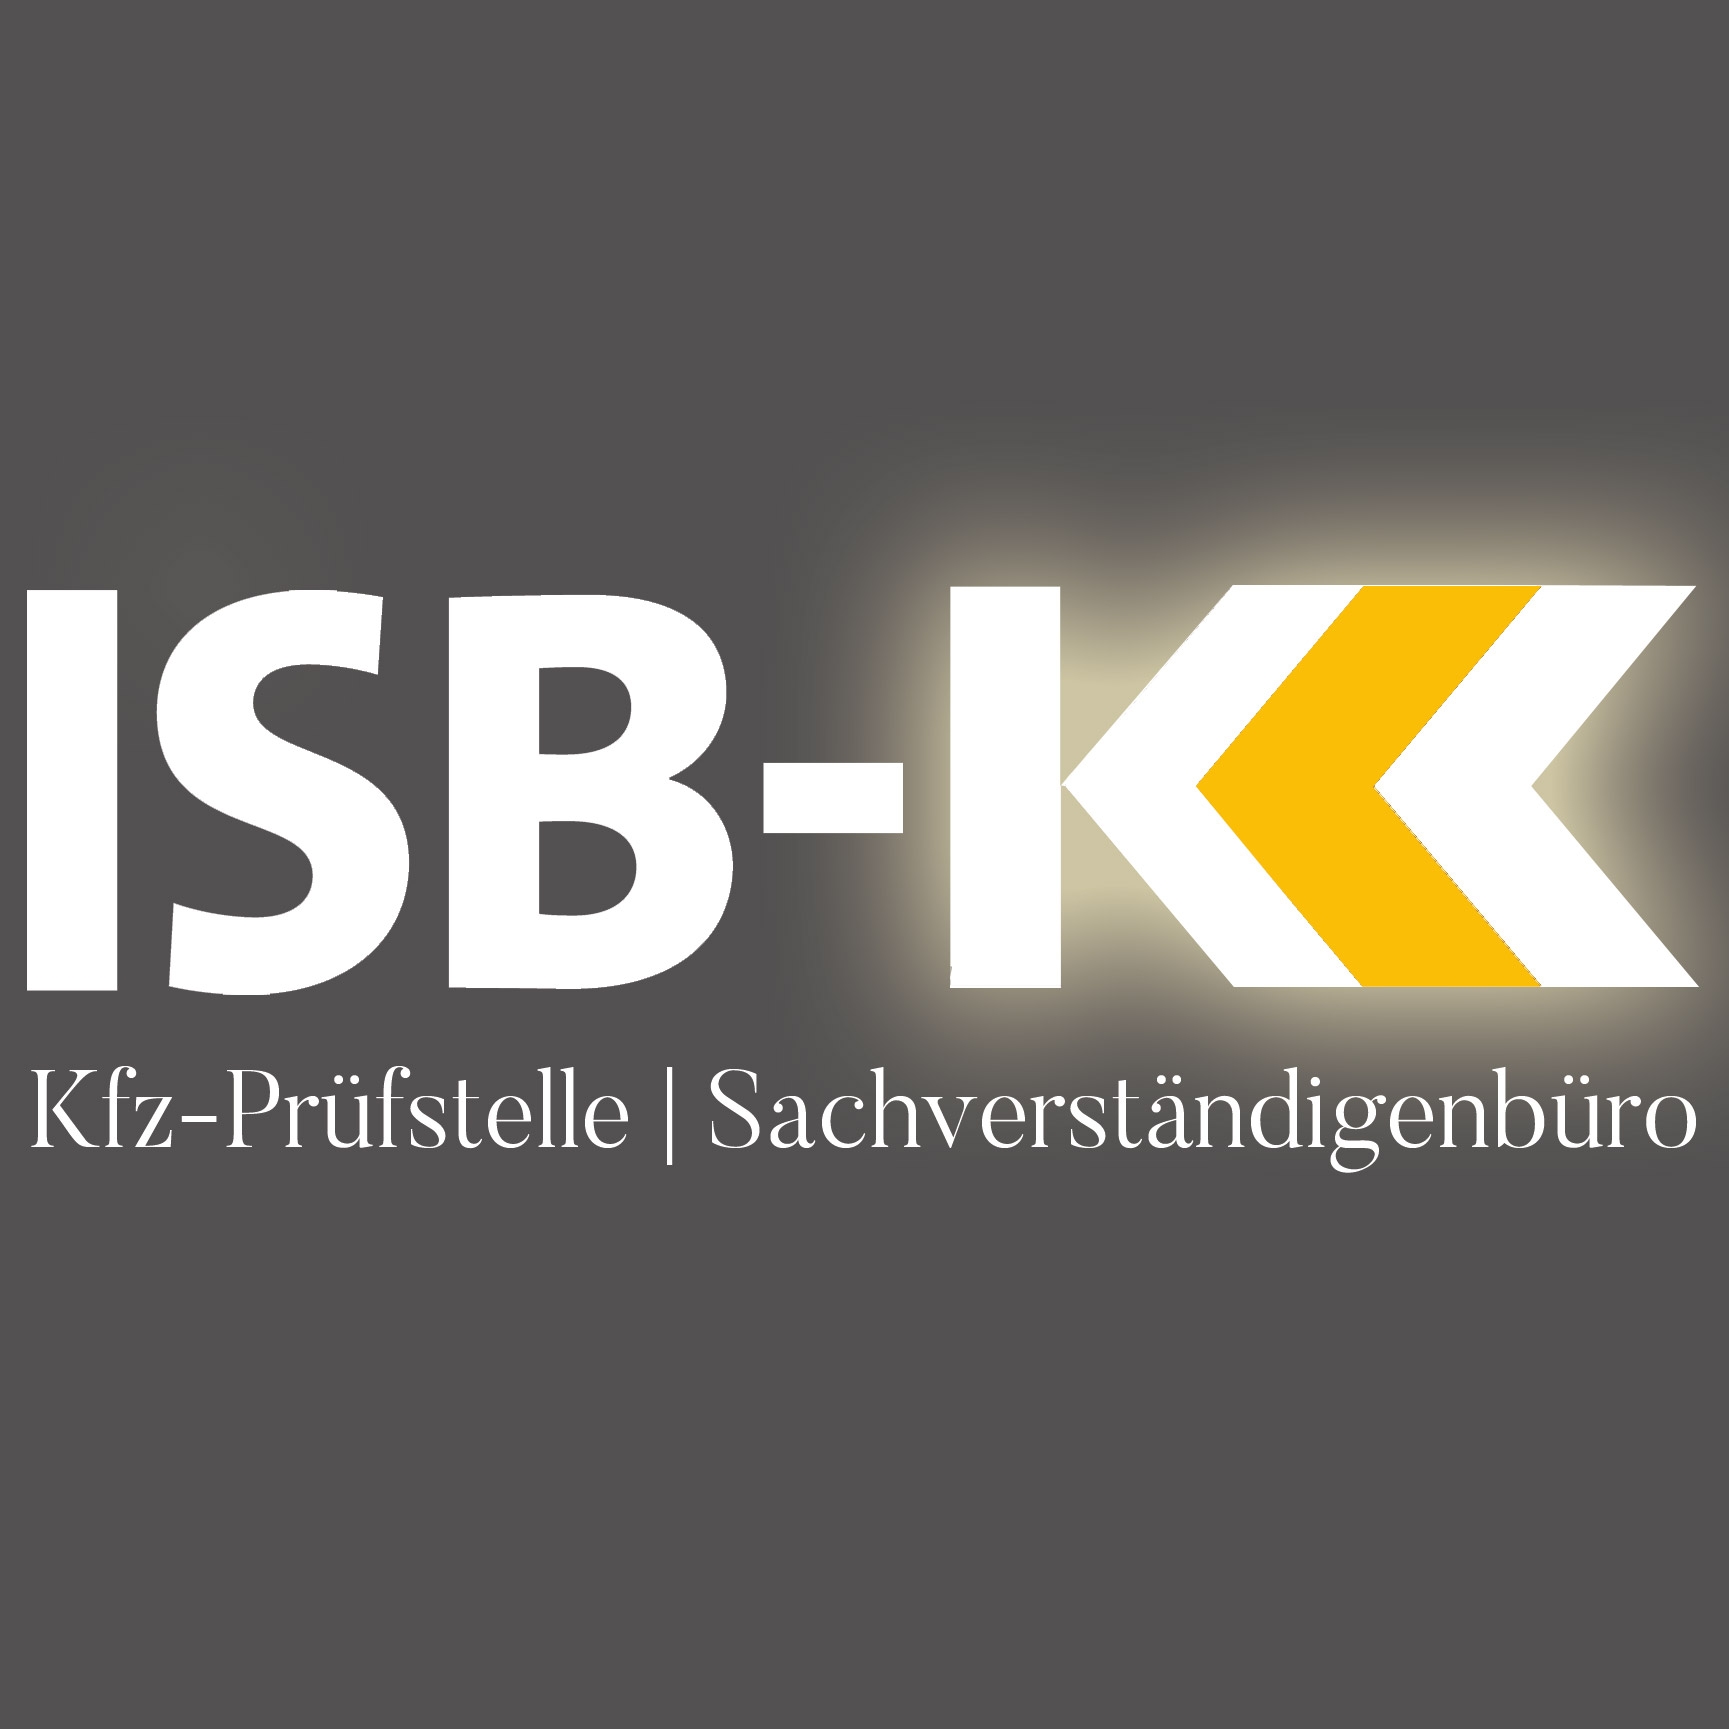 GTÜ Kfz - Prüfstelle Rhein - Ruhr in Essen - Logo